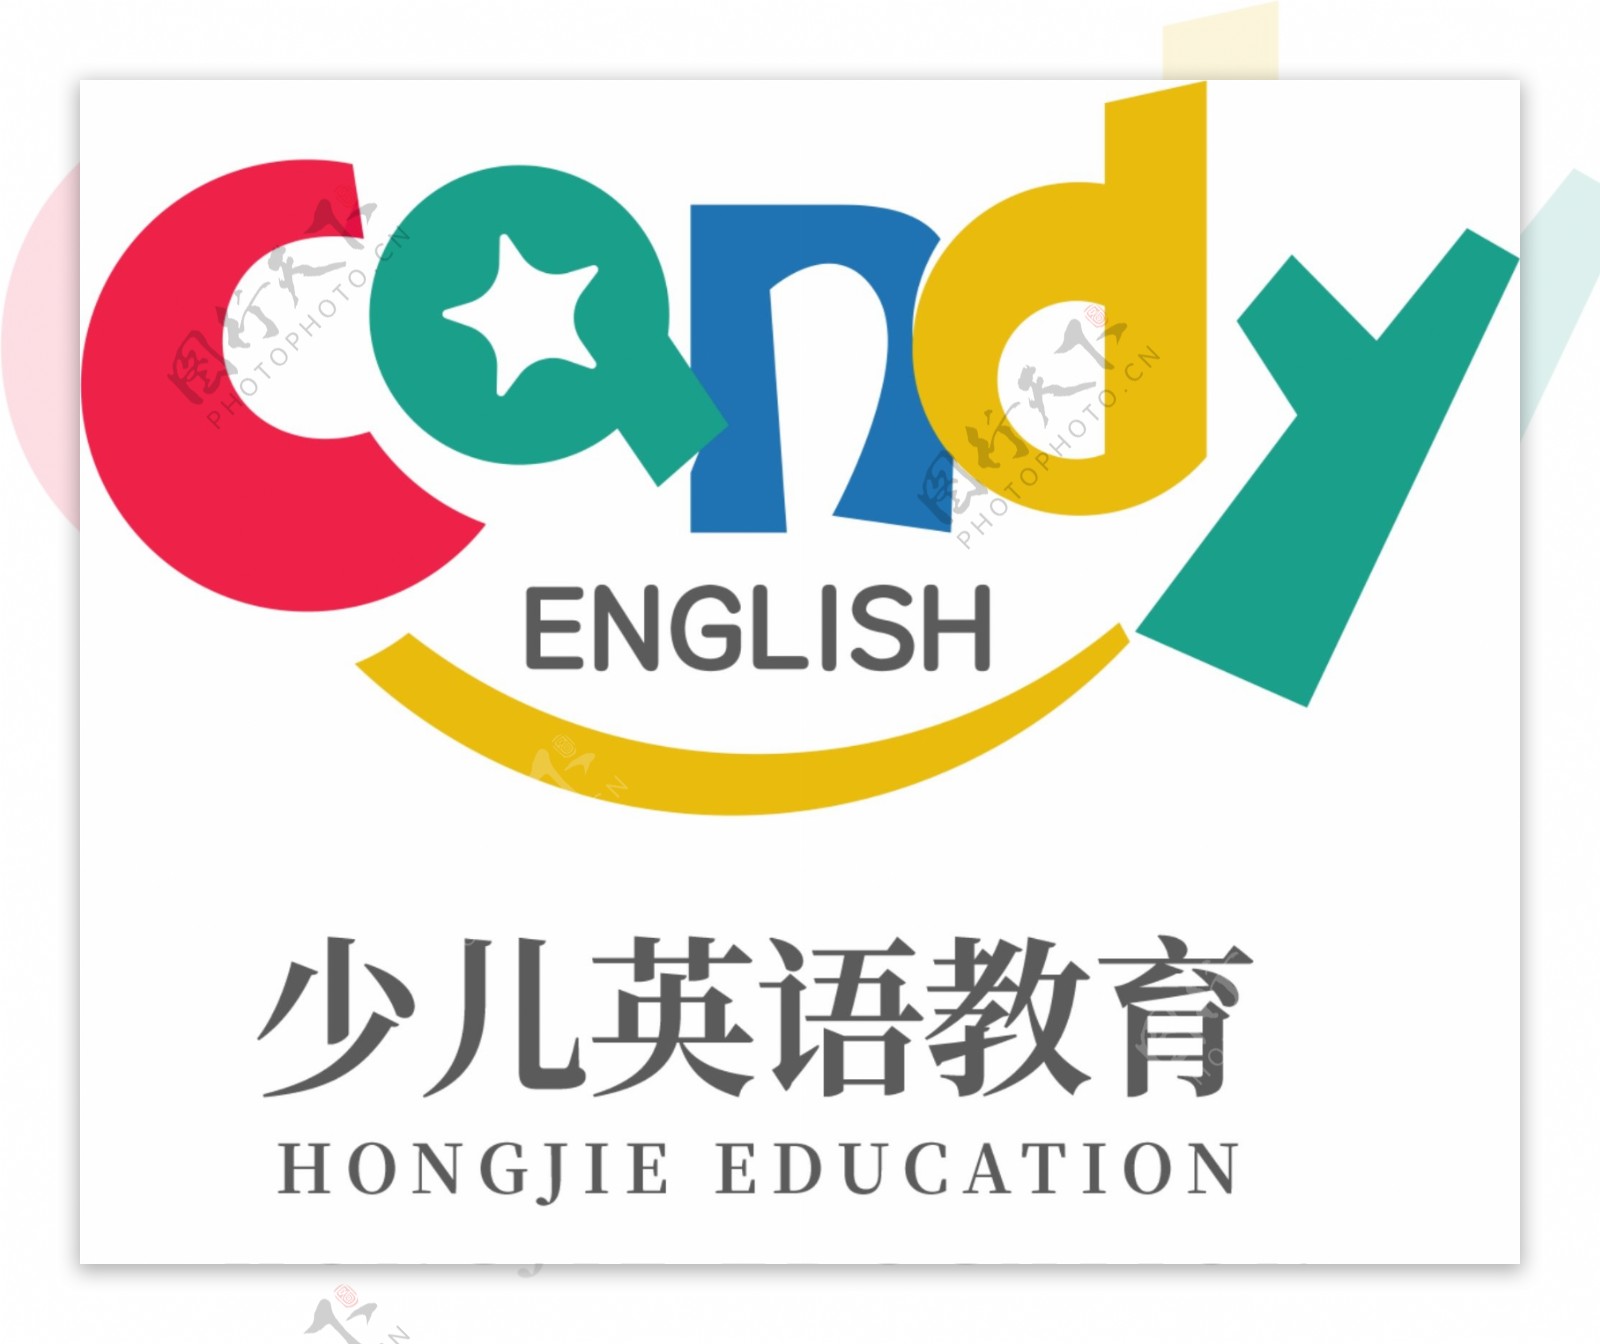 少儿英语教育logo